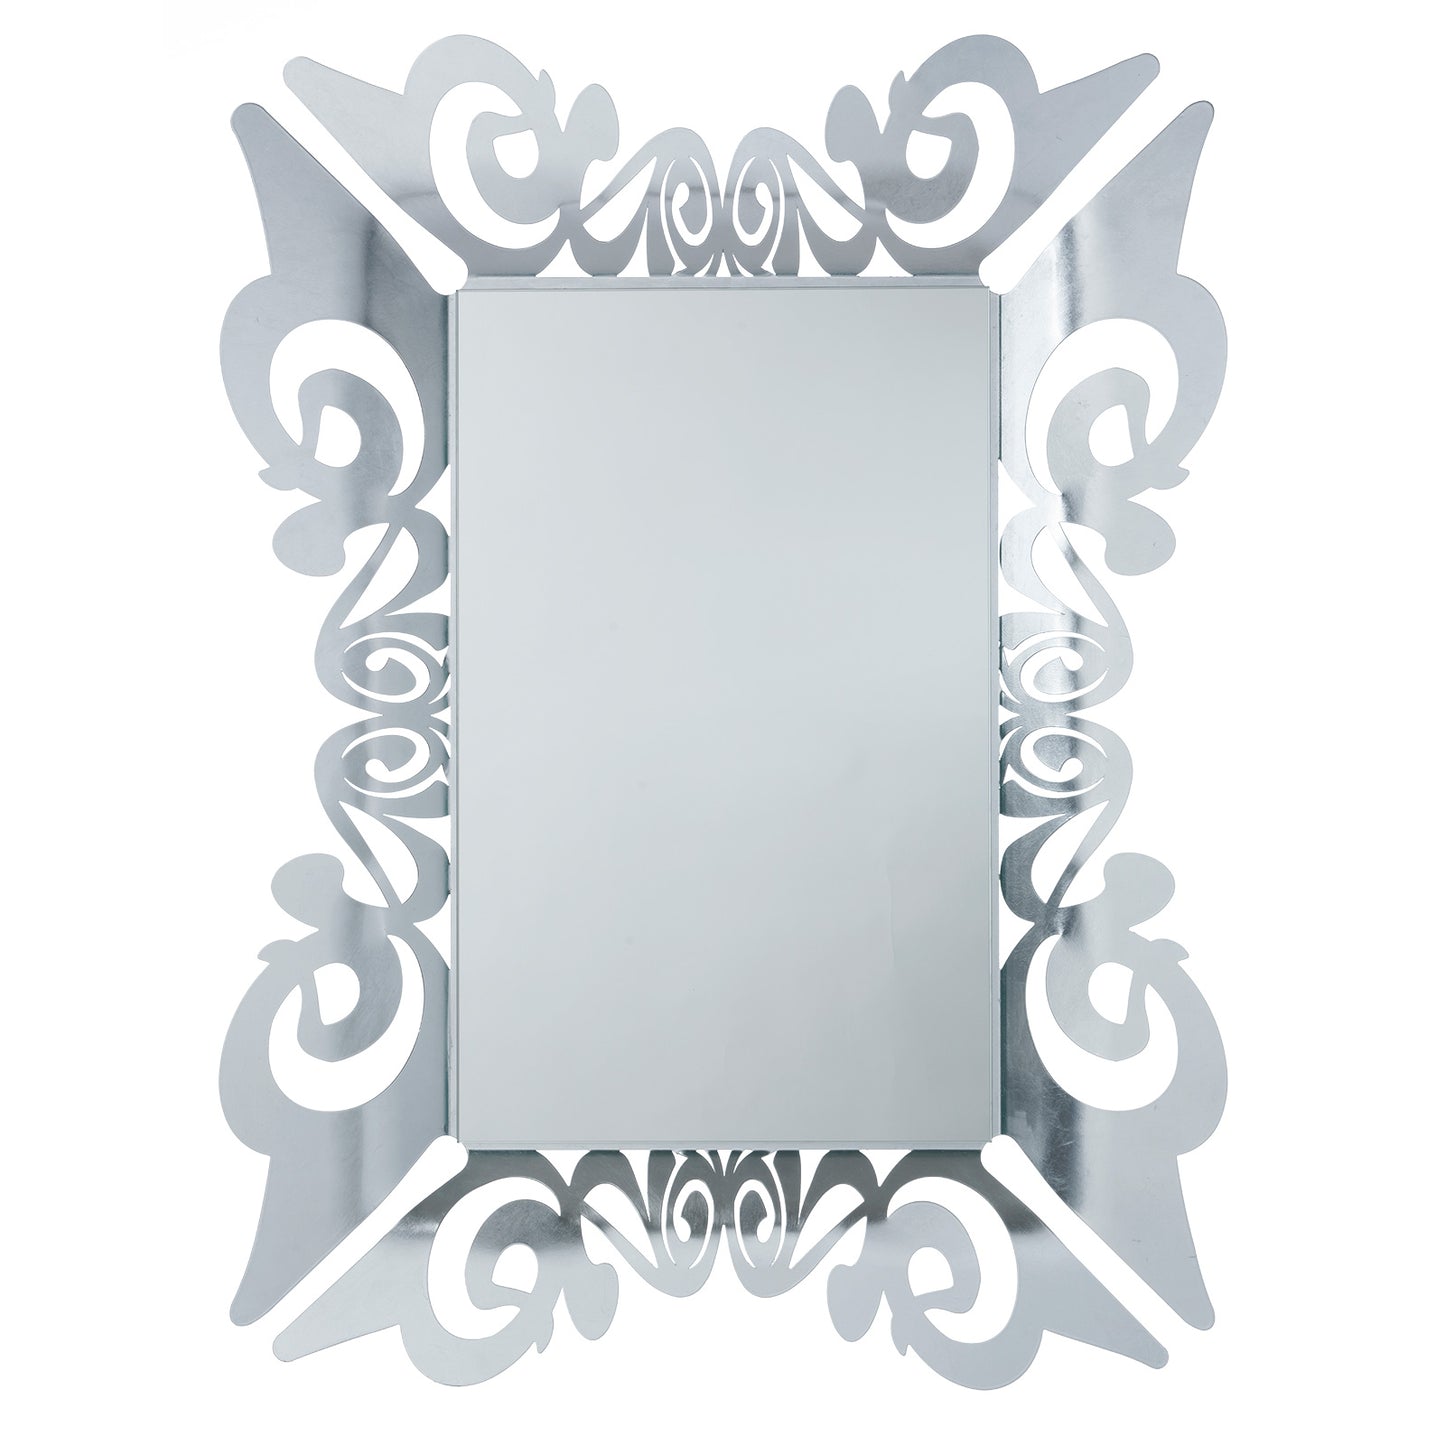 Specchio da parete decorato con applicazione manuale di foglia argento Vanity, caratterizzato da particolare design. Il suo stile elegante e la sua cornice gli donano un tocco di raffinatezza. Dimensioni: cm 80 x 100H (43 x 68H). In negozio e online su tuttochic.it